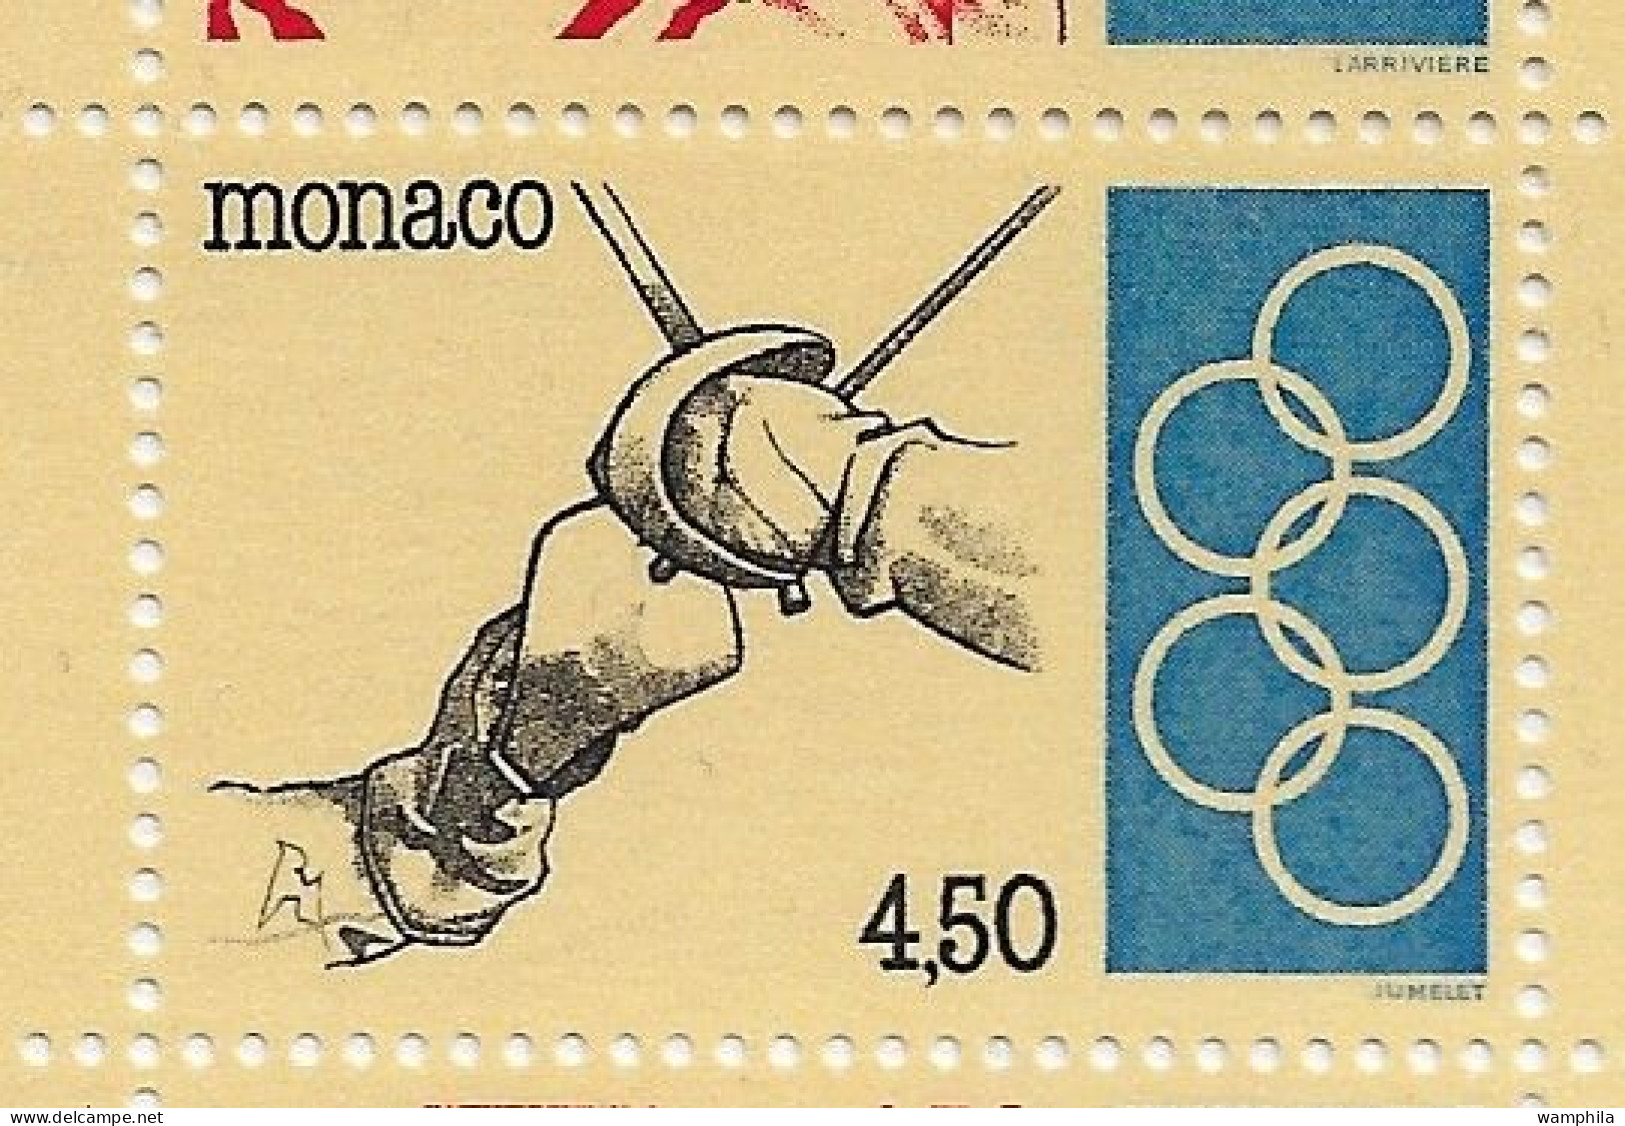 Monaco 1993. Carnet N°11, J.O .Anneaux, Judo, Escrime, Haies, Tir à L'arc, Haltérophilie. - Unused Stamps